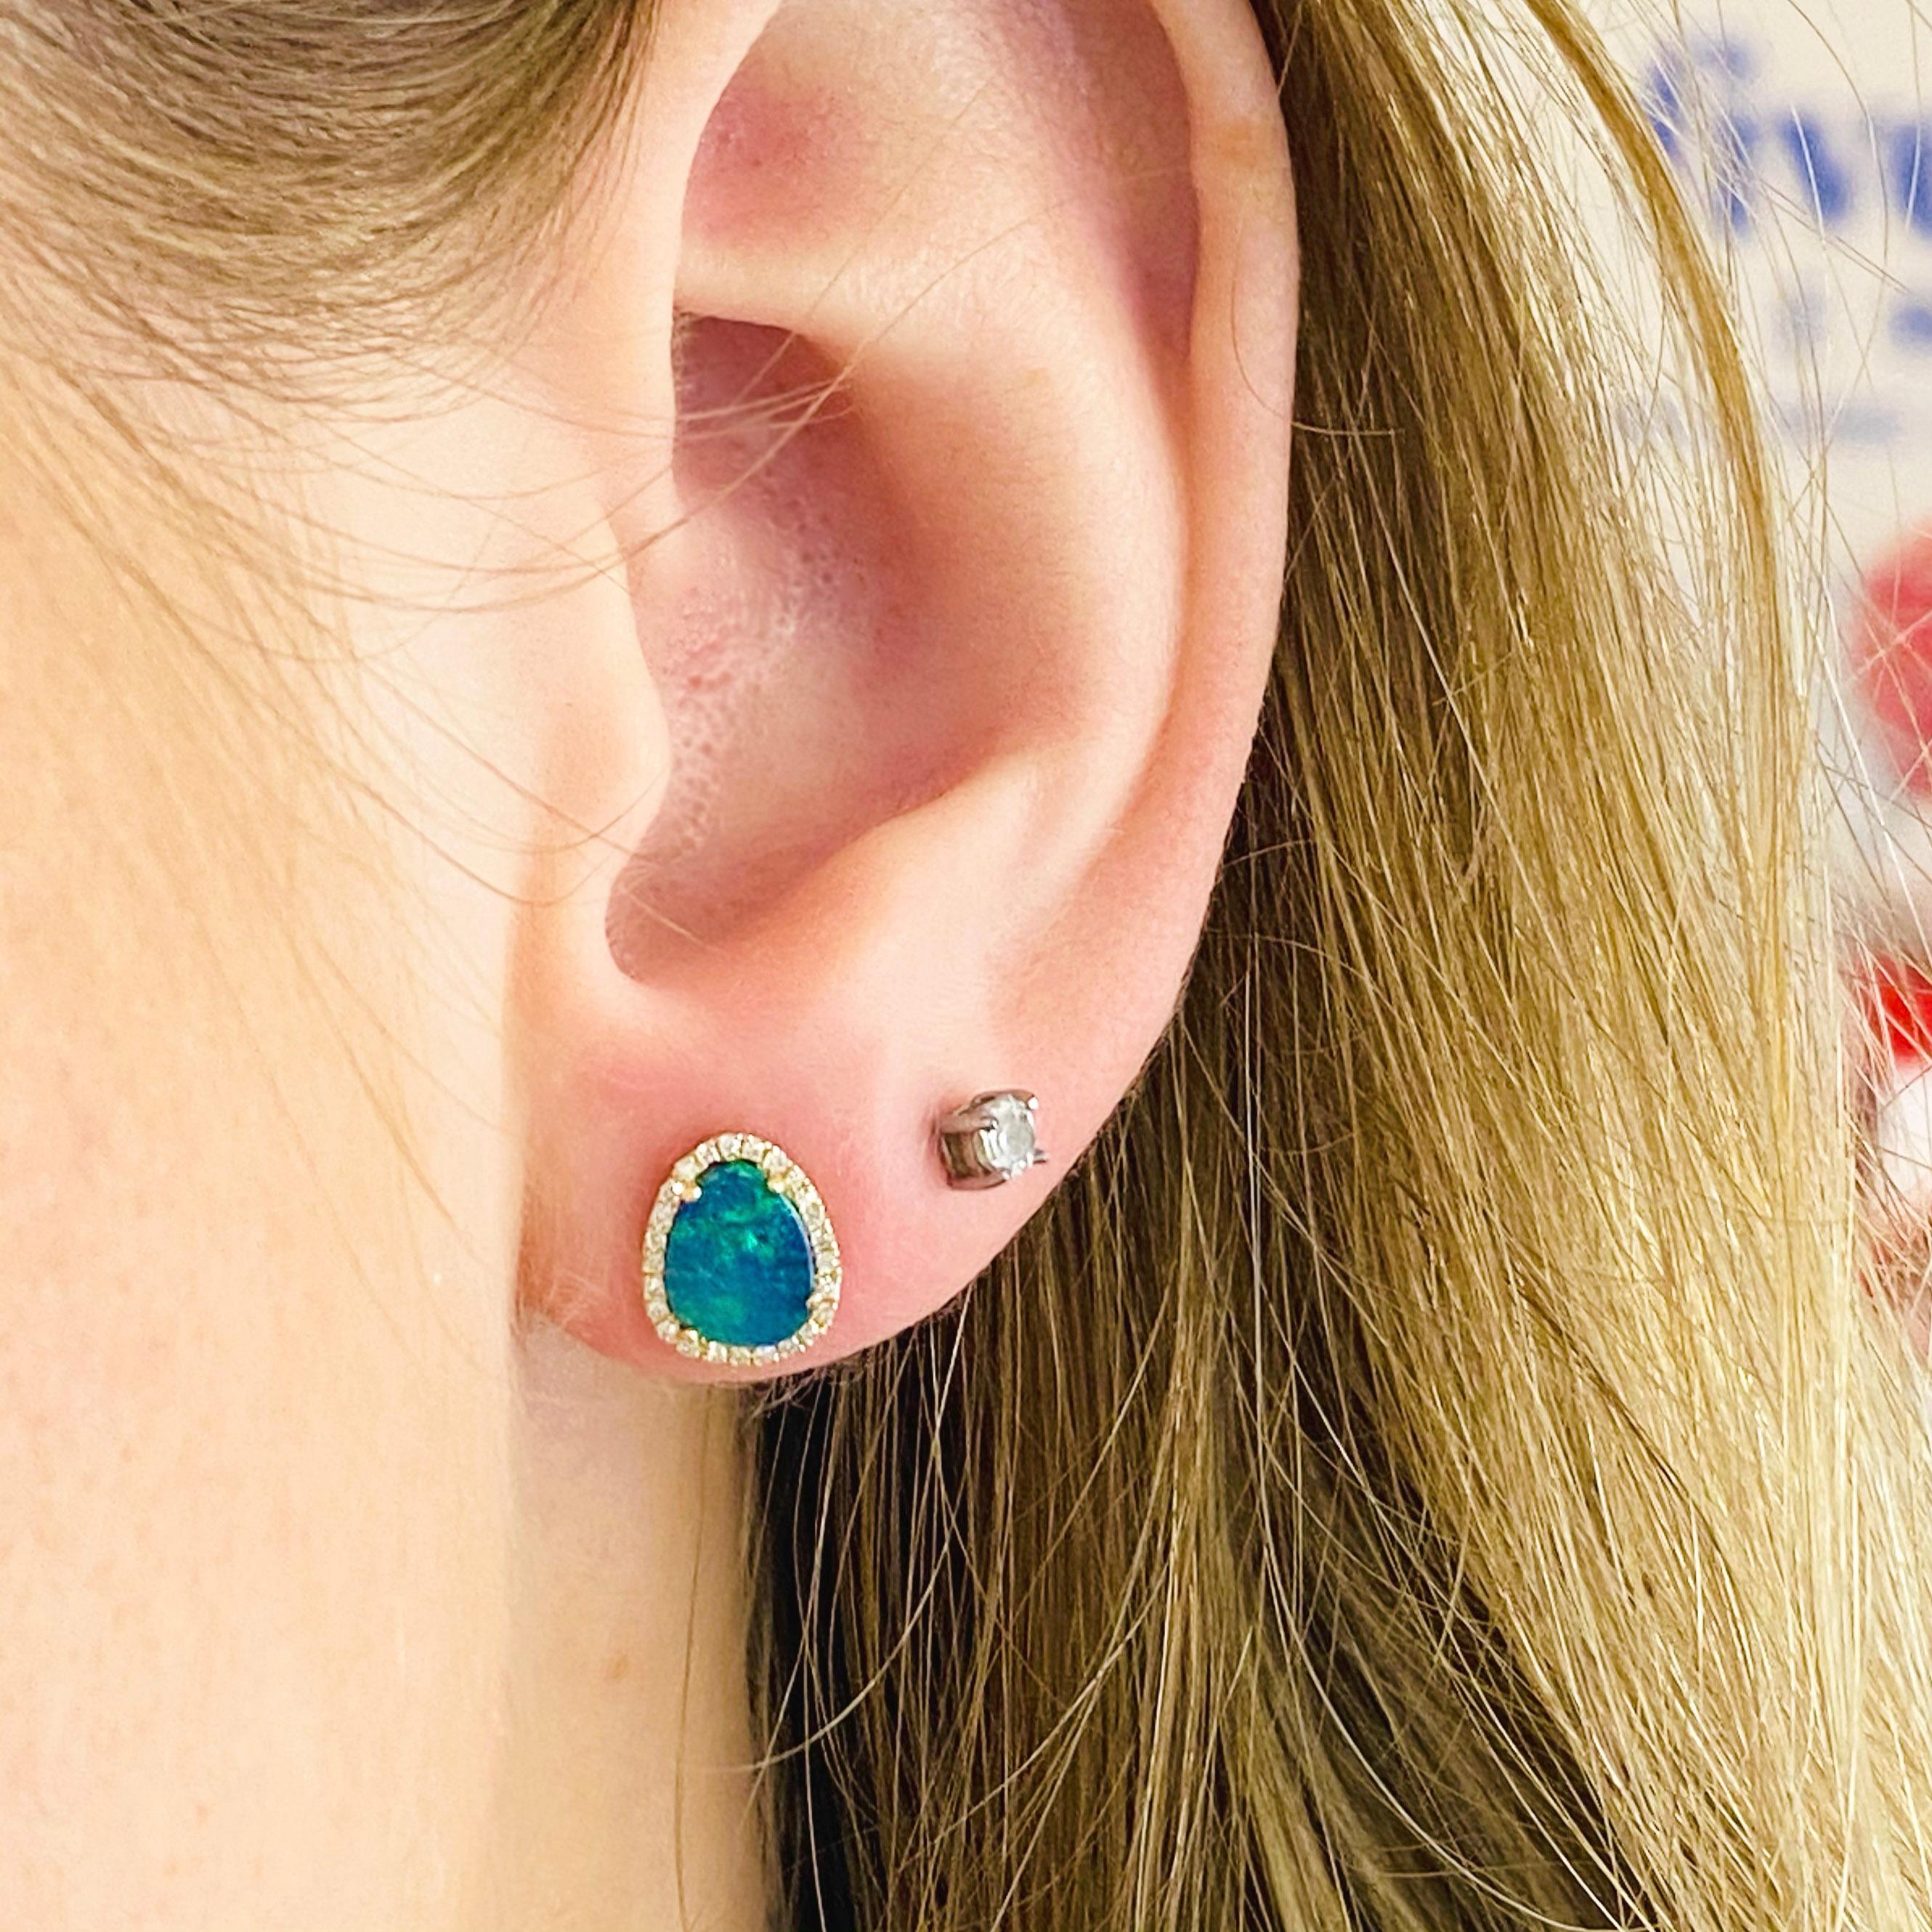 Diese organischen blauen Opal-Ohrringe sind einfach zum Sterben schön!  Der Opal ist unglaublich hell und sieht mit einem Halo aus Diamanten um ihn herum wunderschön aus.  Der Ohrstecker ist die beliebteste Art von Ohrringen in unserem Geschäft! 